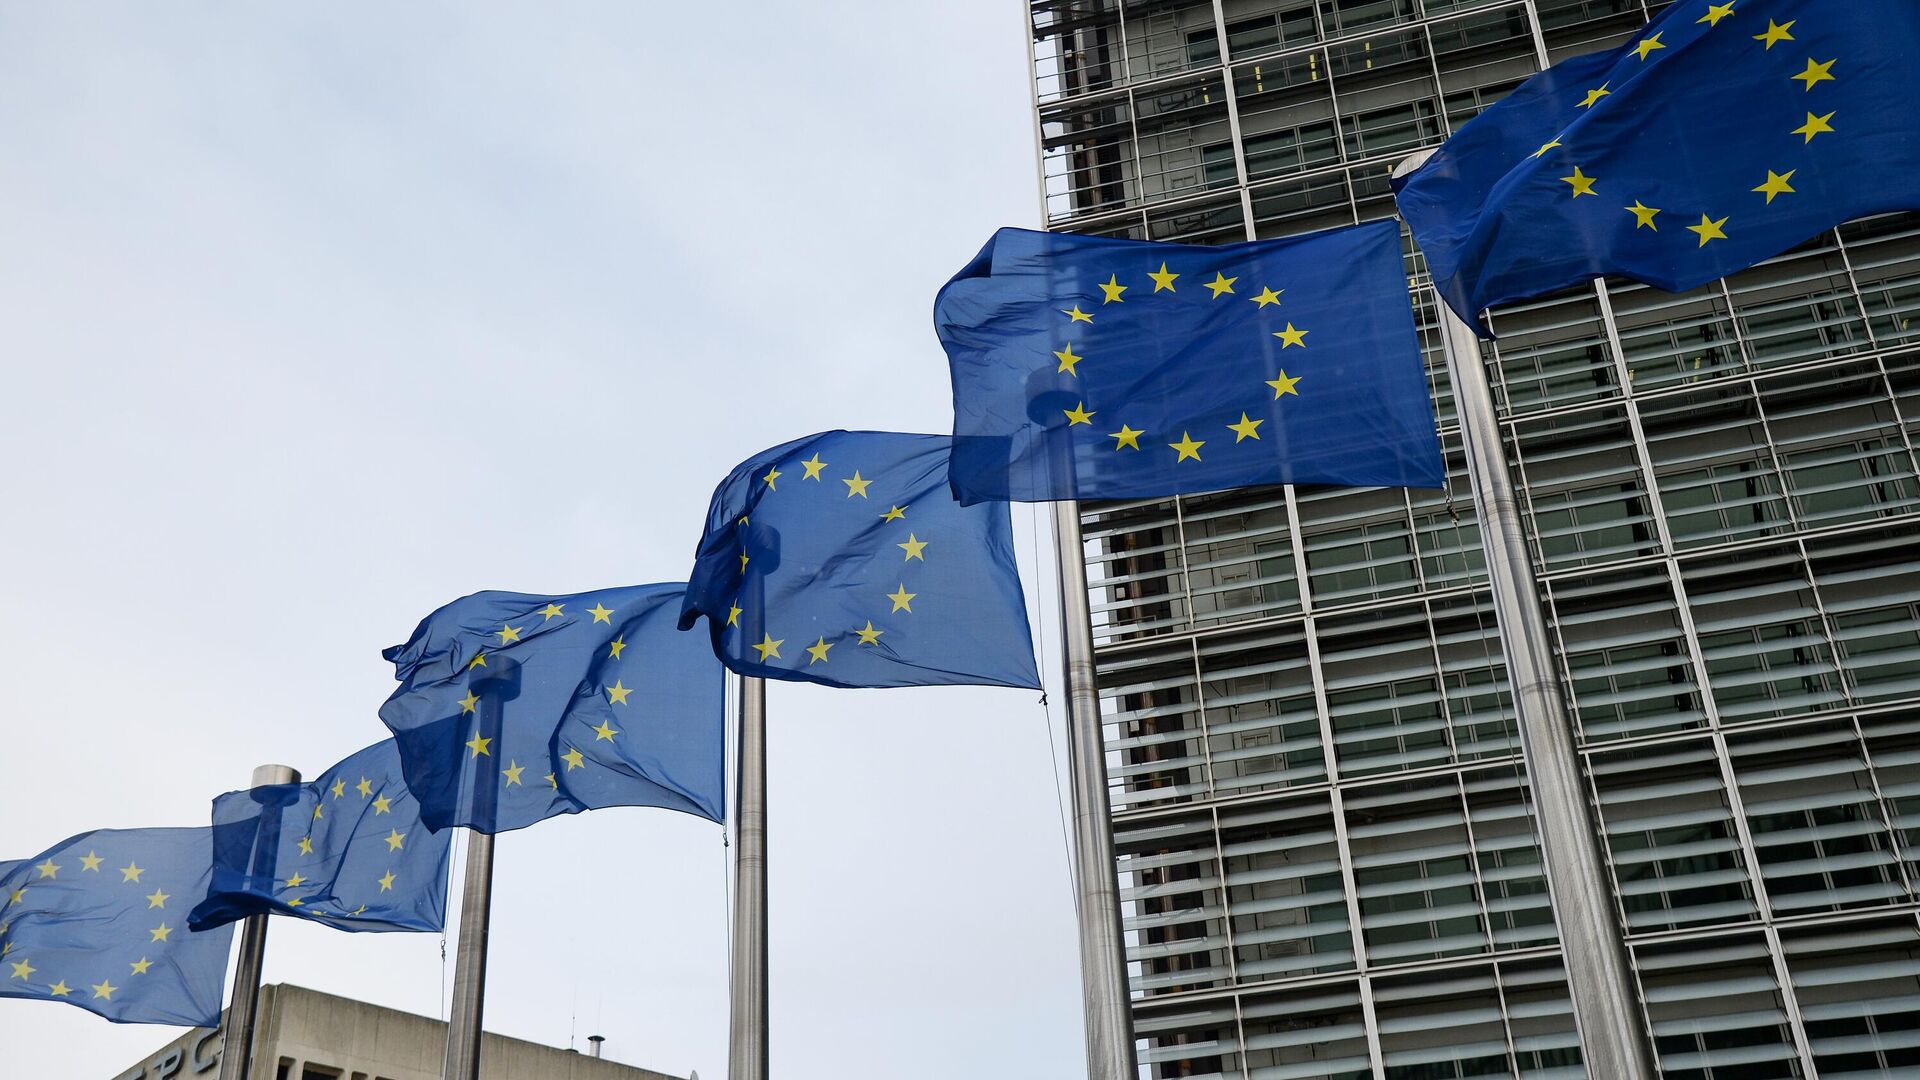 Флаги Евросоюза возле здания штаб-квартиры Европейского парламента в Брюсселе - РИА Новости, 1920, 15.12.2021